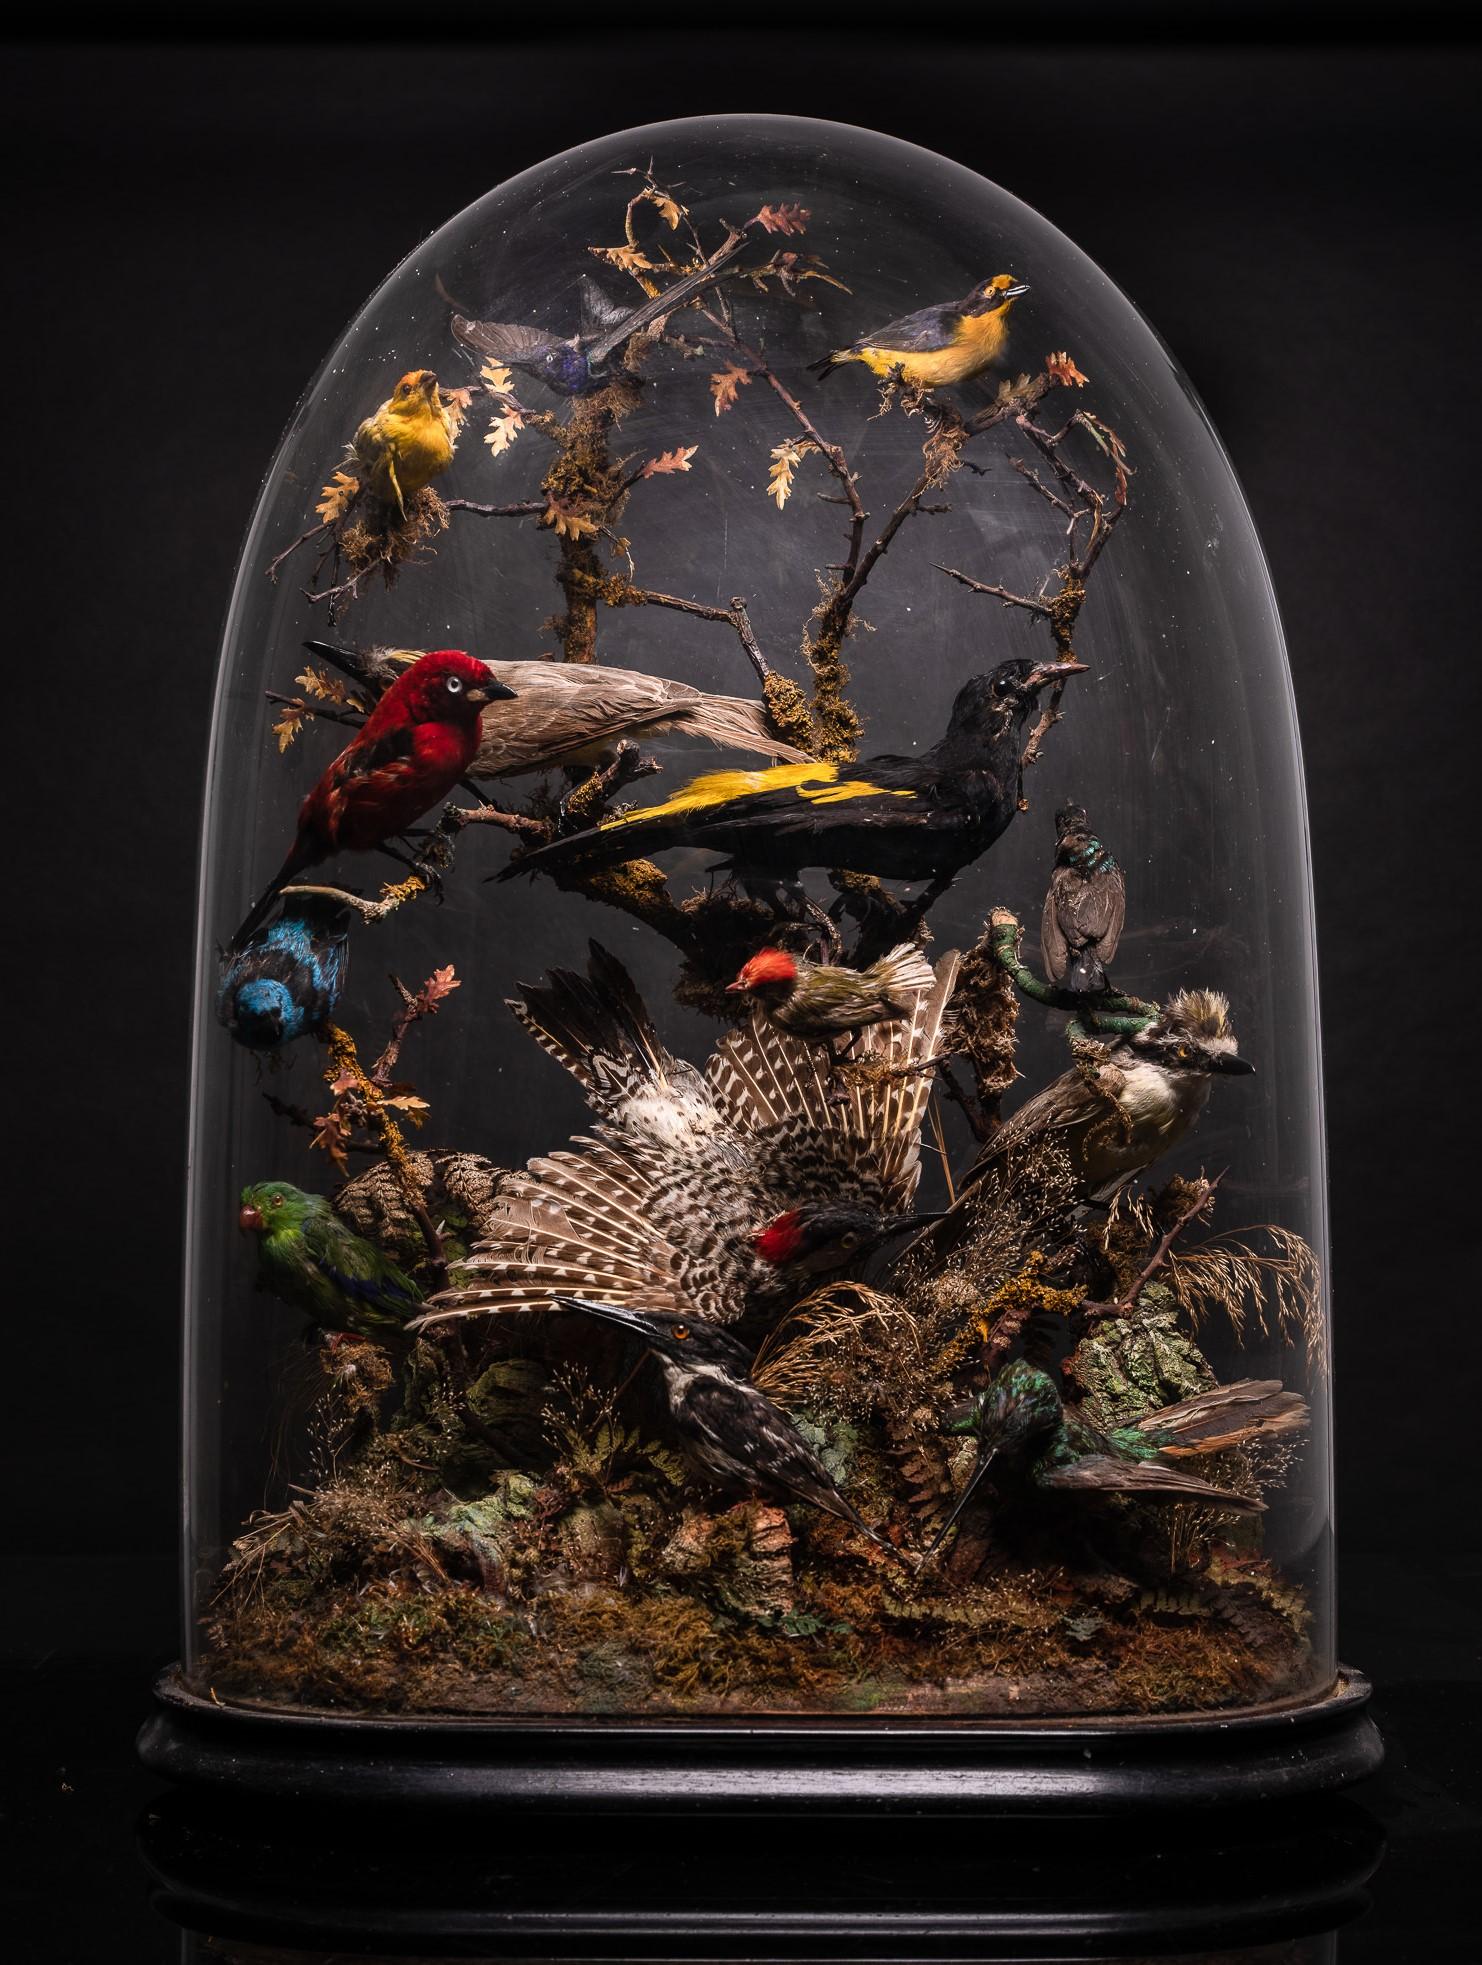 Le taxidermiste et entomologiste britannique James Gardner Sr a réalisé ce dôme en verre victorien avec des oiseaux exotiques. Son studio et sa boutique étaient situés au 52 High Holborn Street et plus tard au 426 Oxford Street à Londres. Ses